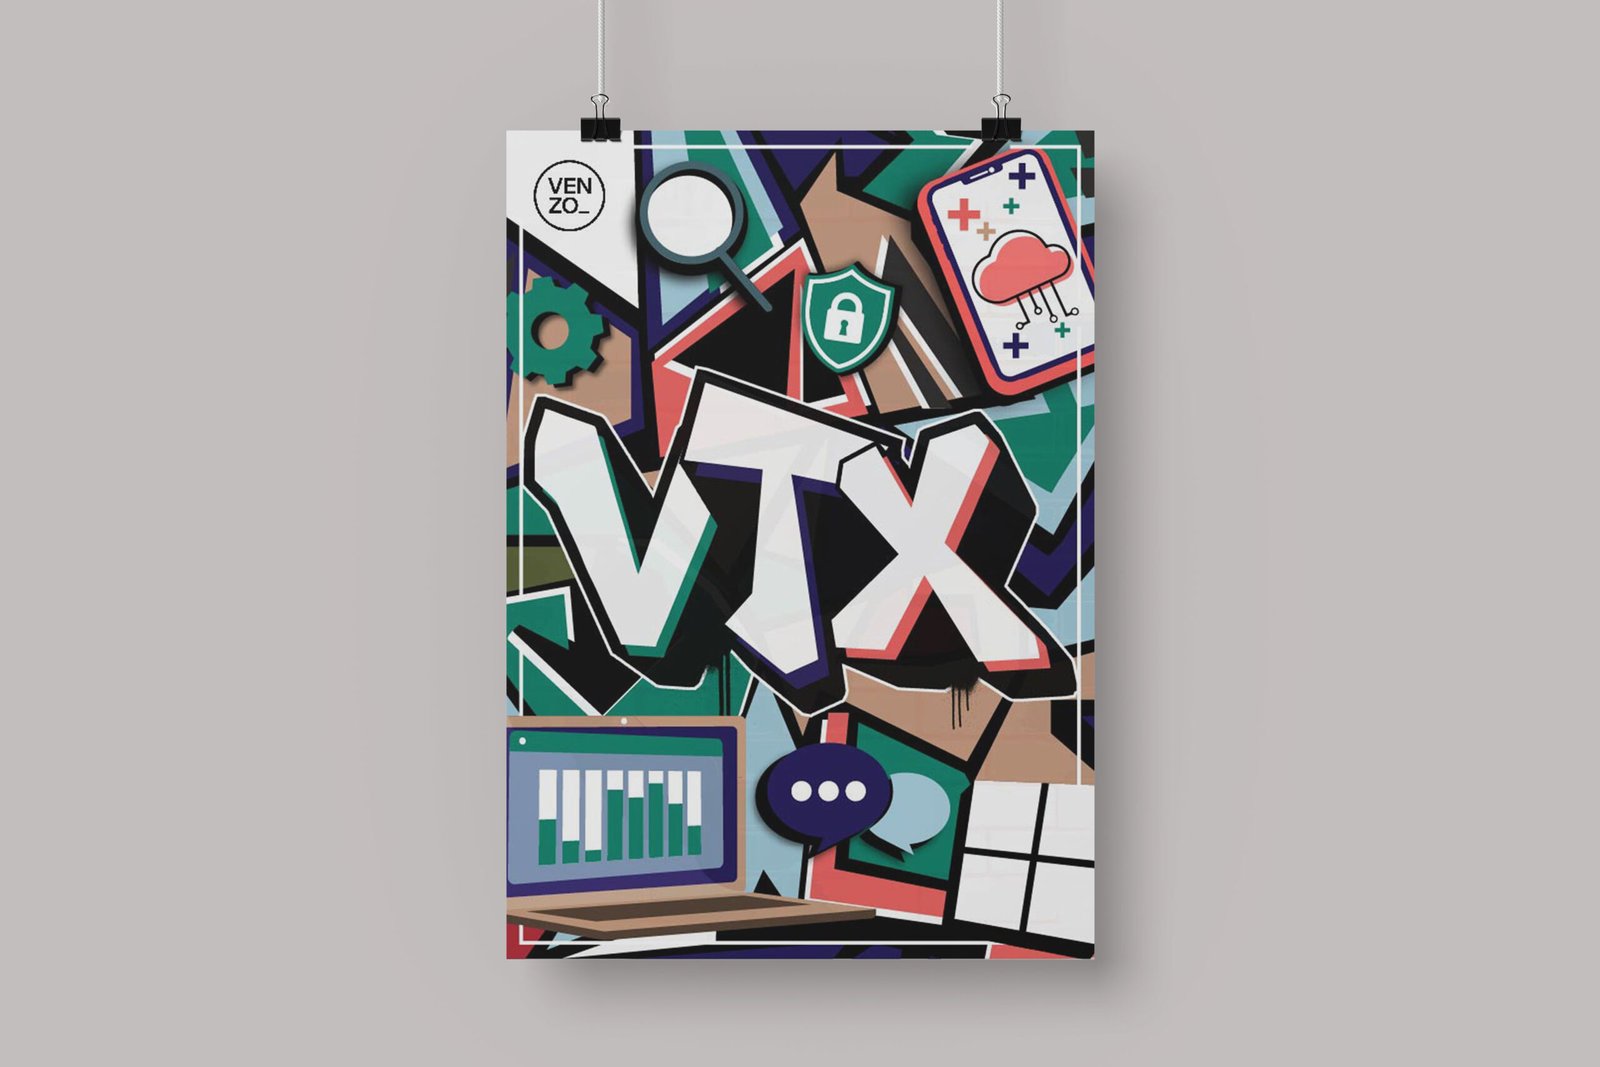 VTX Poster